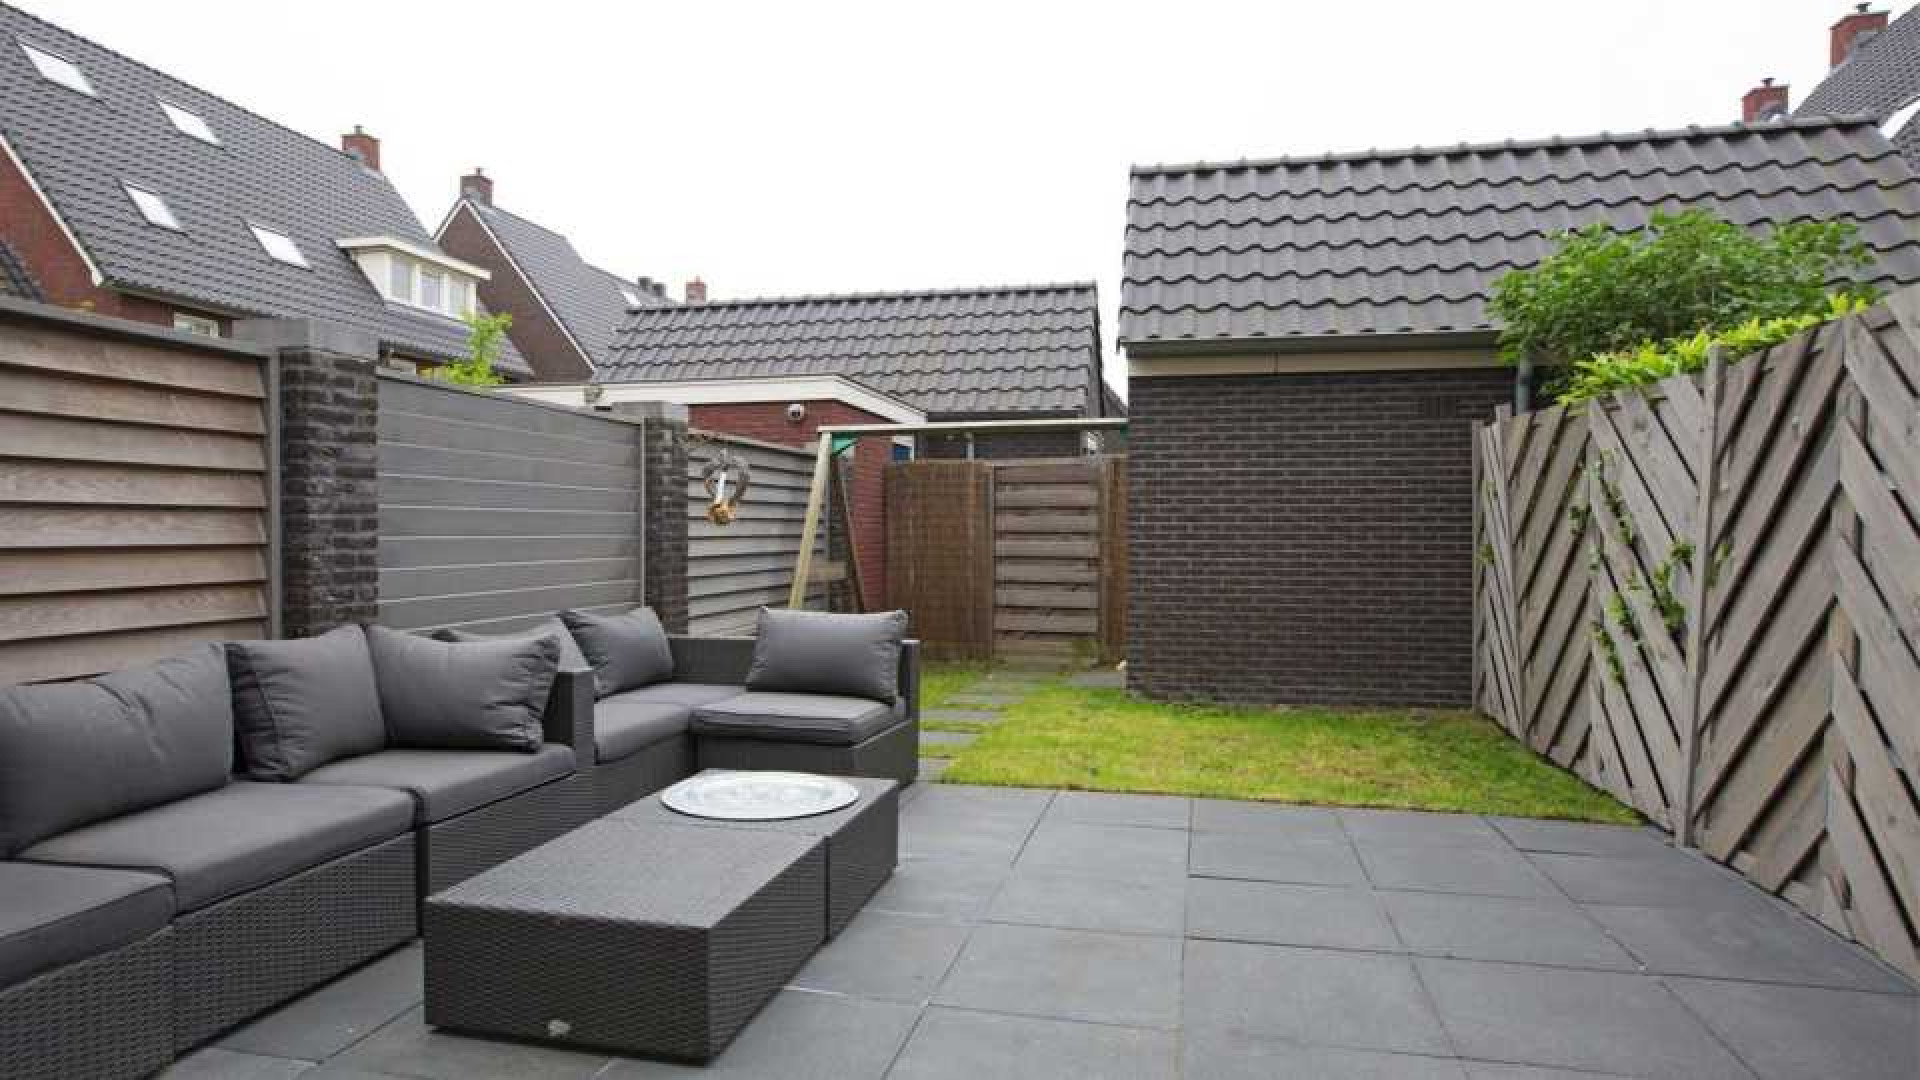 Nederlands Elftal speler Joel Veltman zet zijn huis te koop. Zie foto's 19